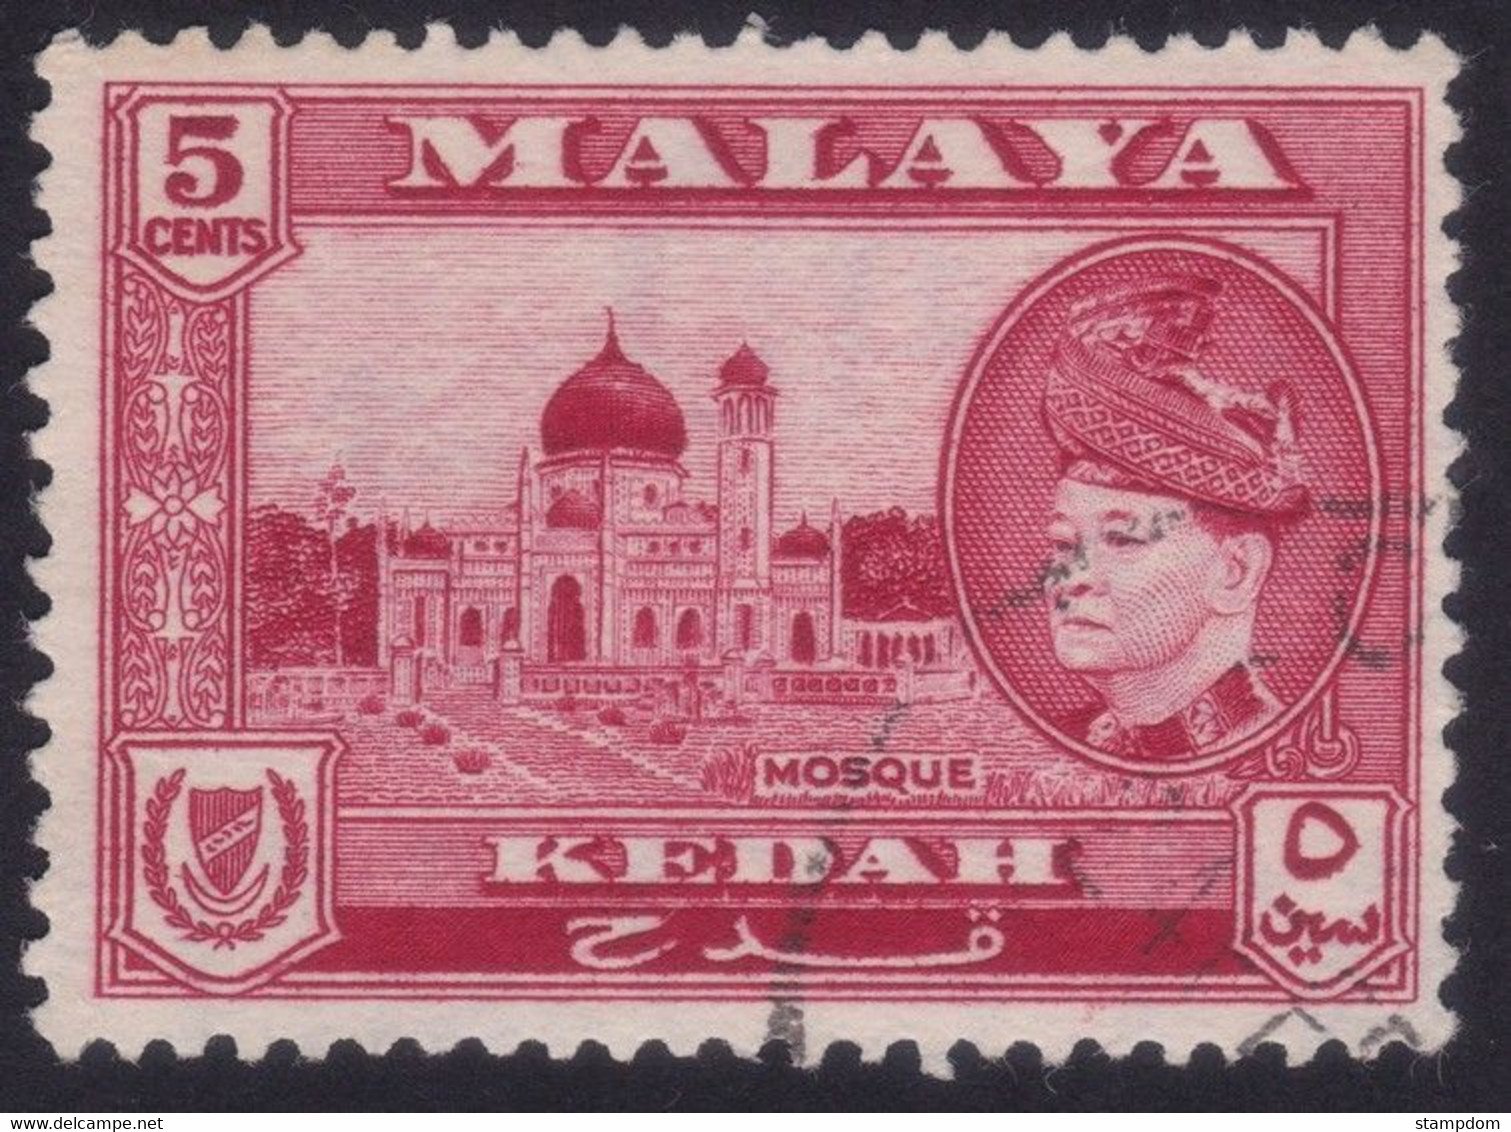 MALAYA KEDAH 1957 5c Sc#86 - USED @N197 - Kedah